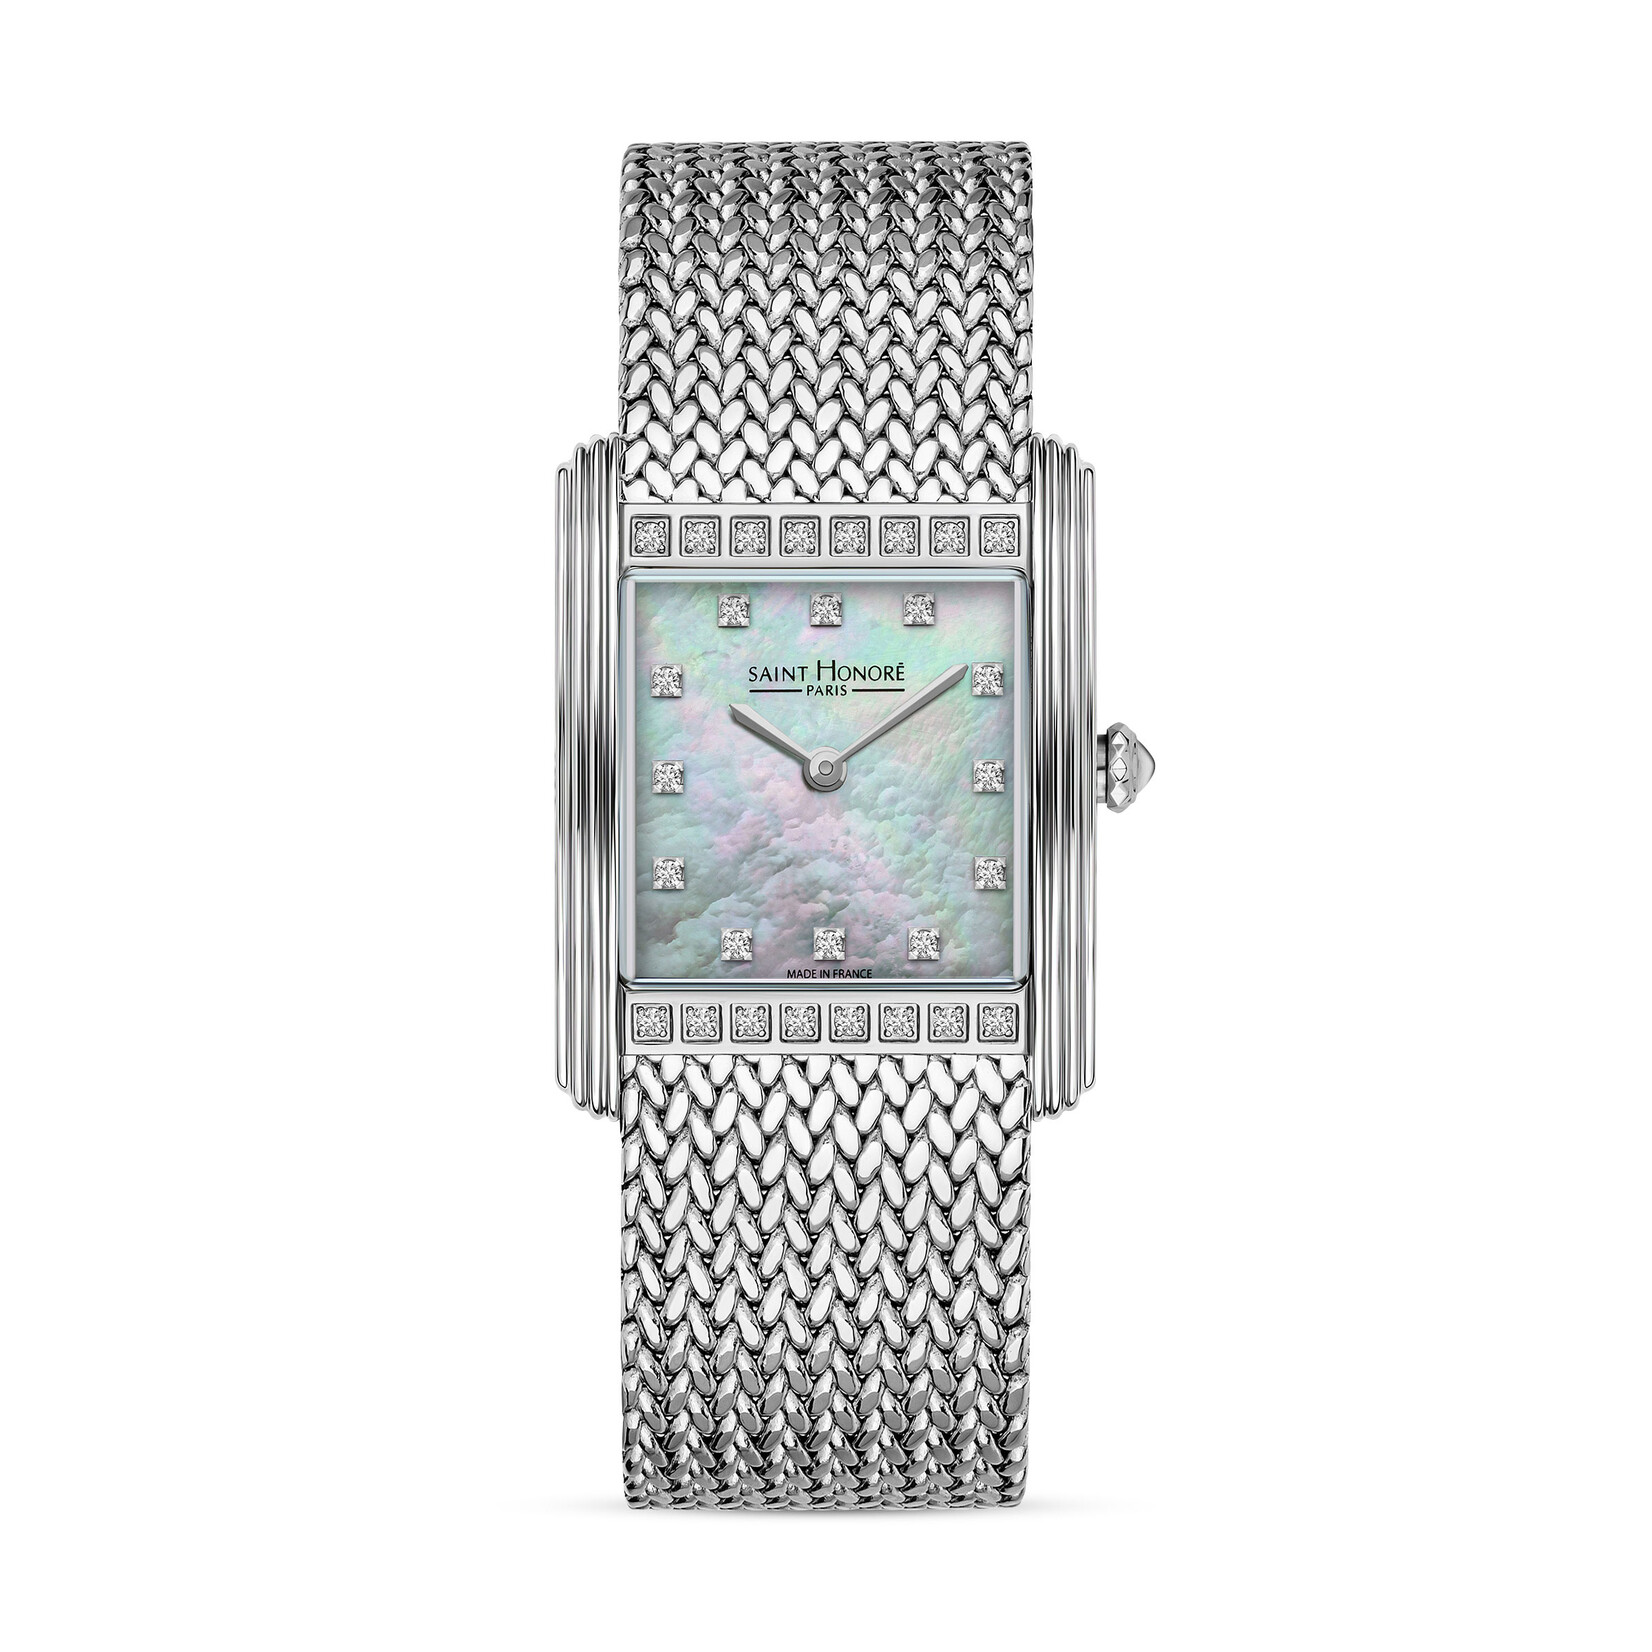 Saint Honoré Saint honoré palais royal horloge pr722155 1ybdn diamond 0.27ct